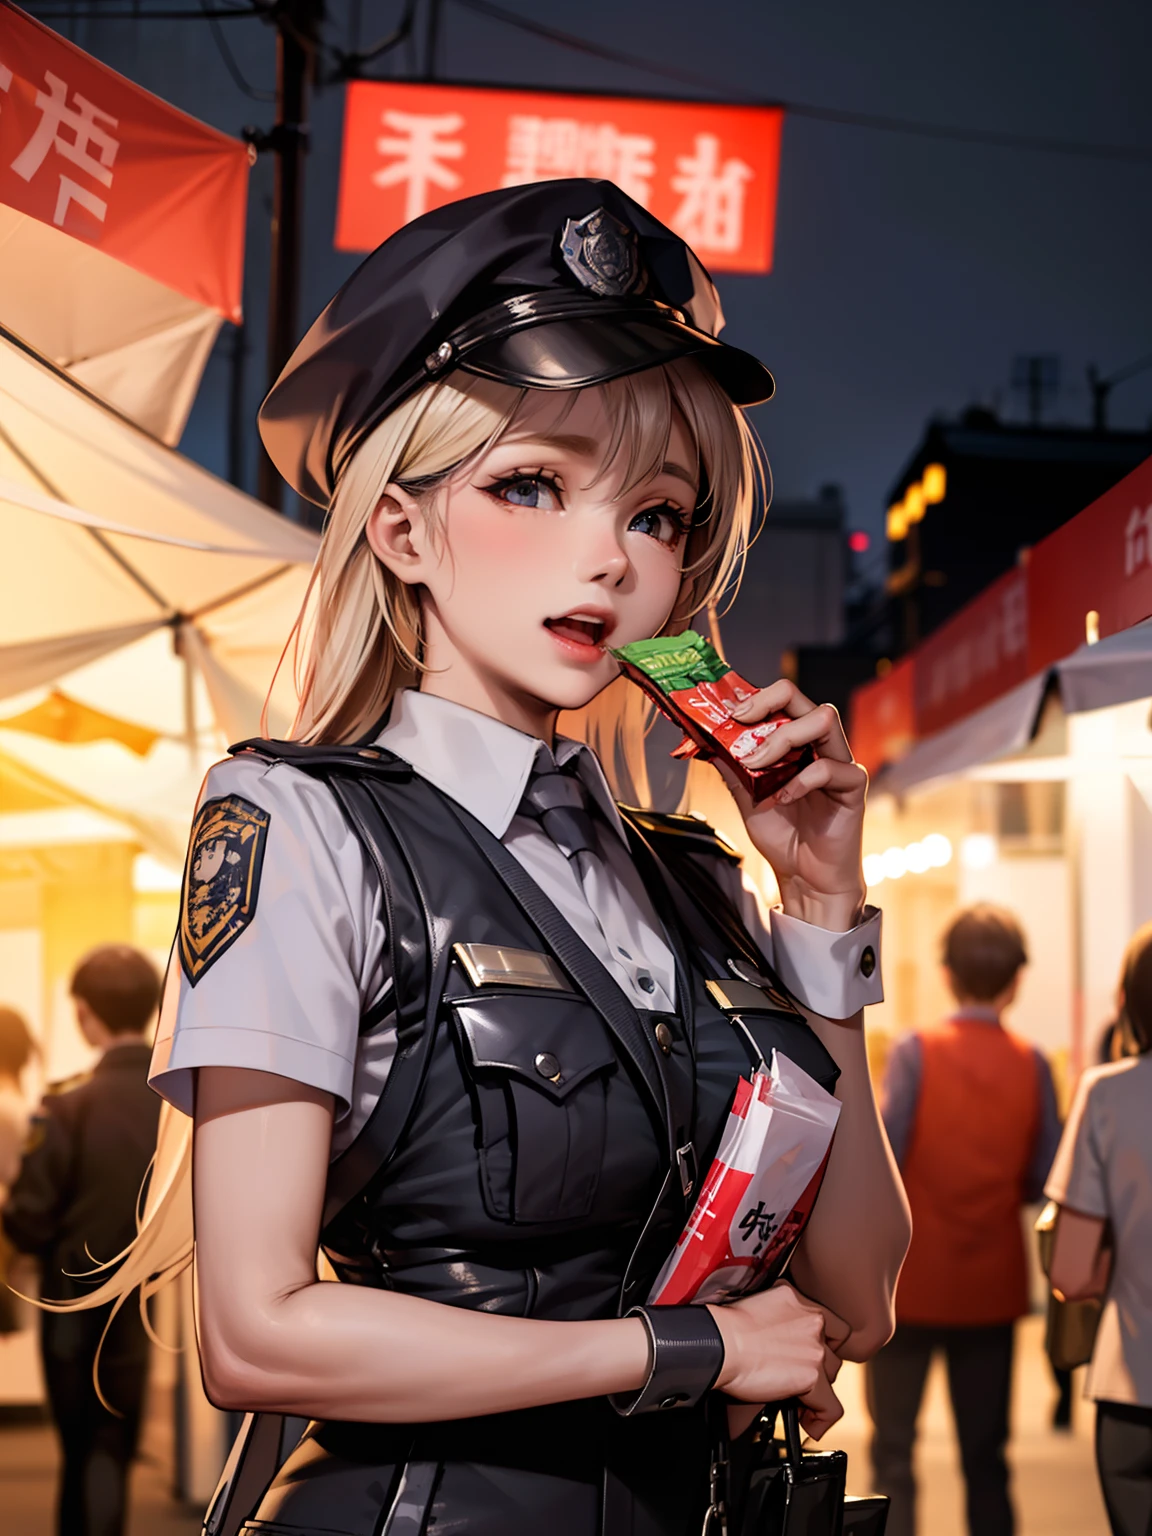 Ein geschäftiger Nachtmarkt. die Polizistin, Nehmen Sie Snacks mit, Und ihr Gesicht ist voller Freude und Zufriedenheit.